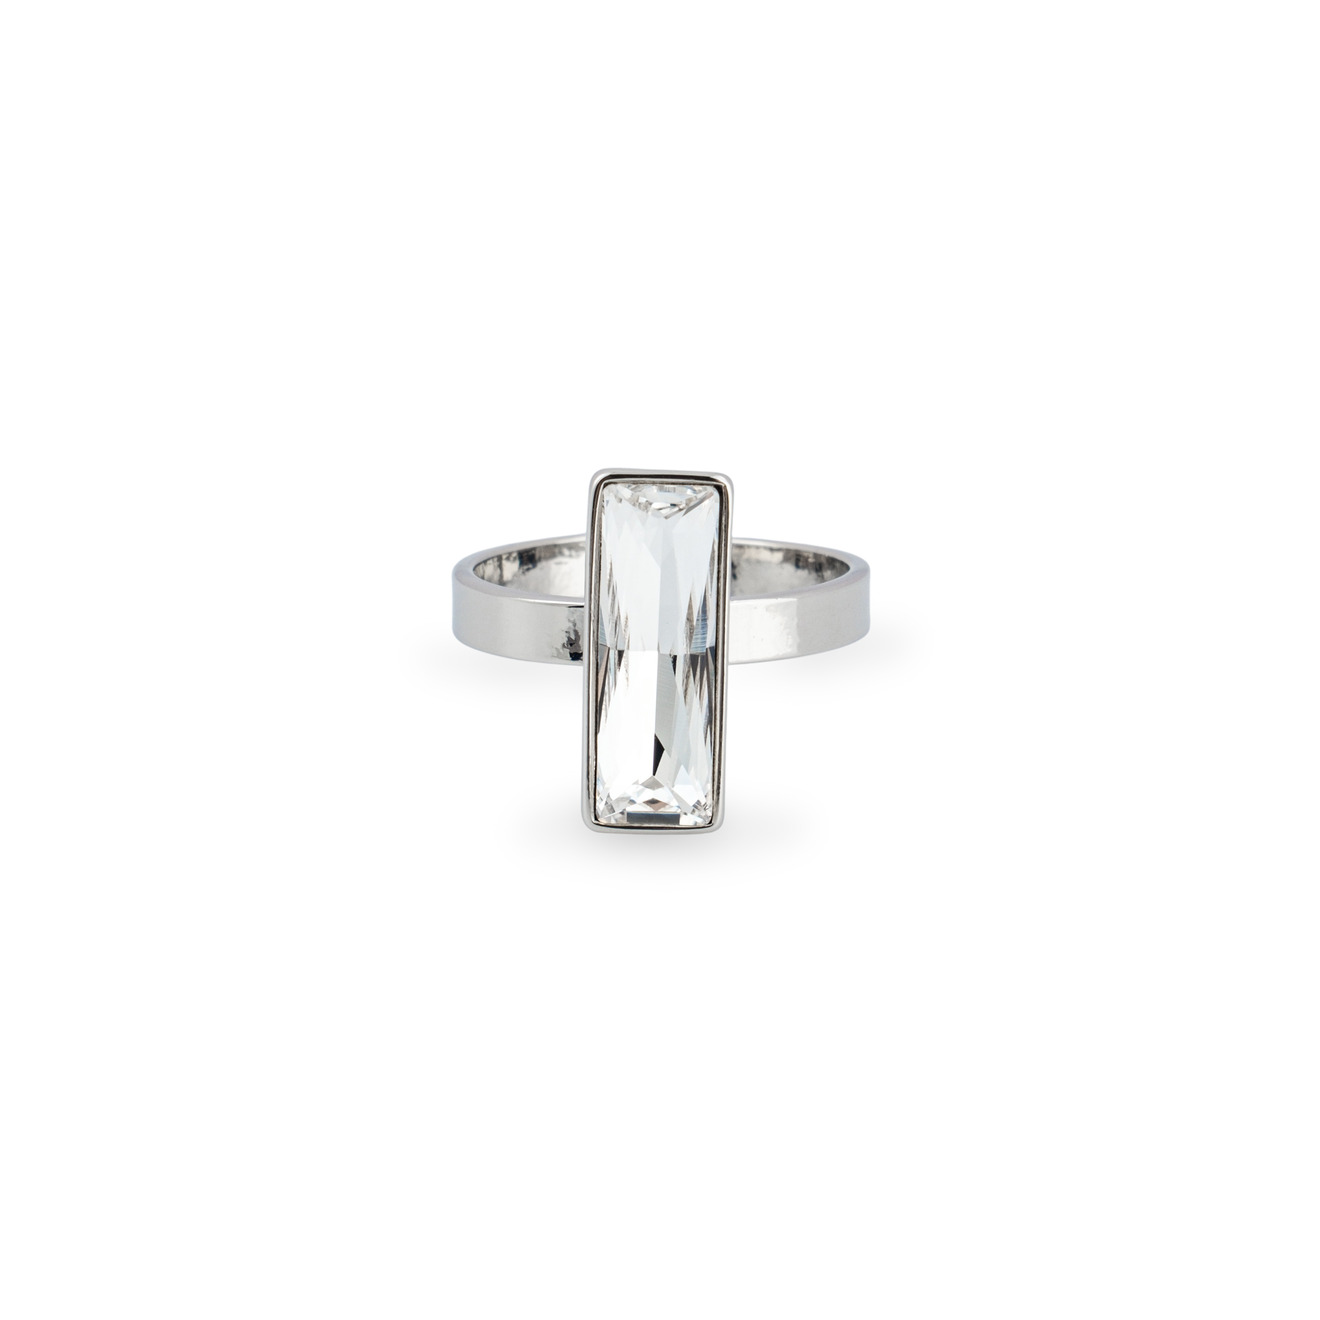 Herald Percy Серебристое кольцо с прозрачным кристаллом herald percy золотистая цепочка с подвеской сердцем с кристаллом